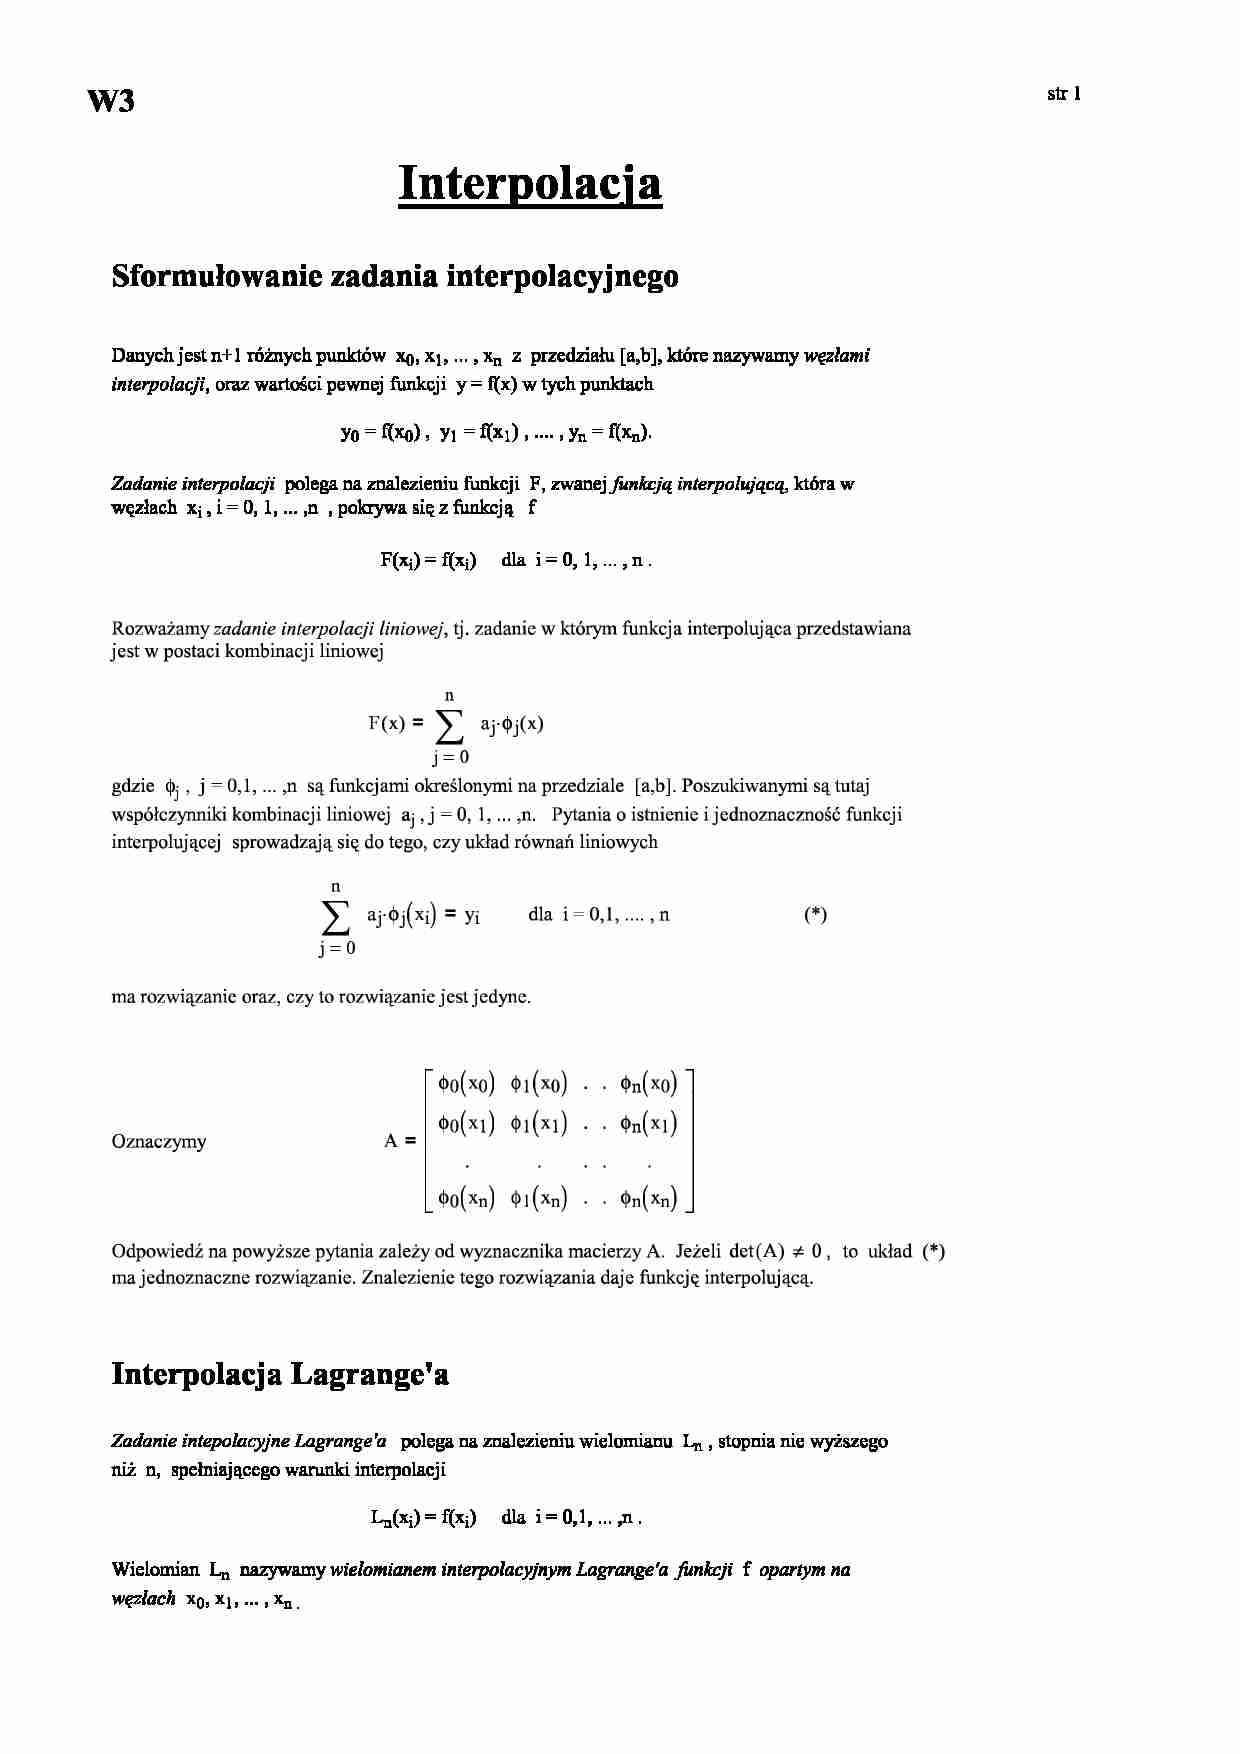 Interpolacja Langrange'a - sformułowanie zadania interpolacyjnego - strona 1